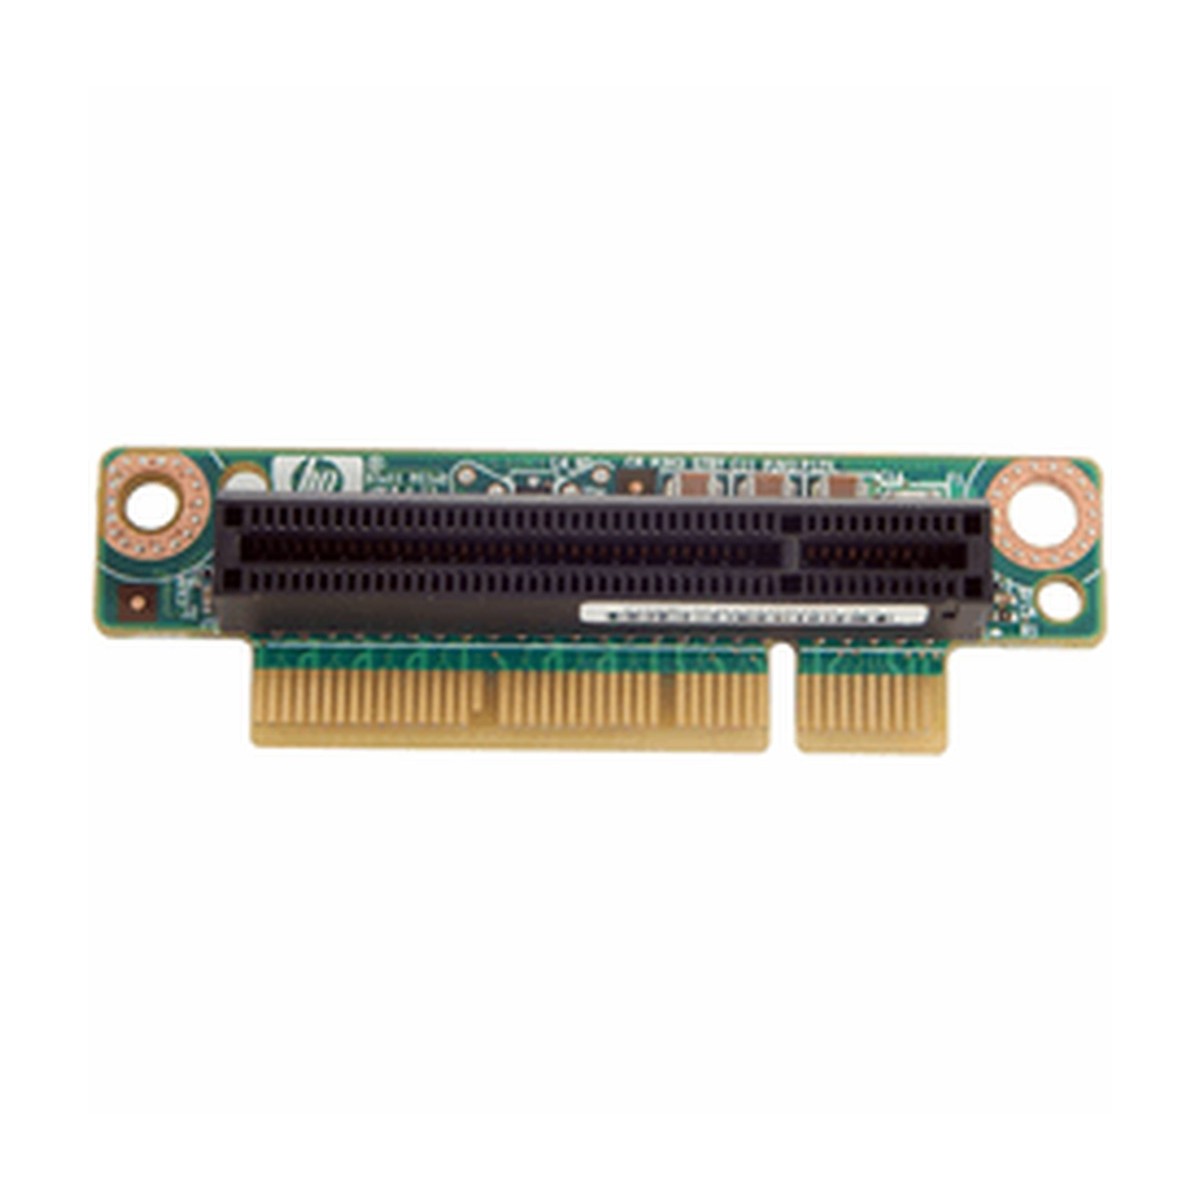 RISER BOARD HP PROLIANT DL360 G6 PCI-E 493802-001